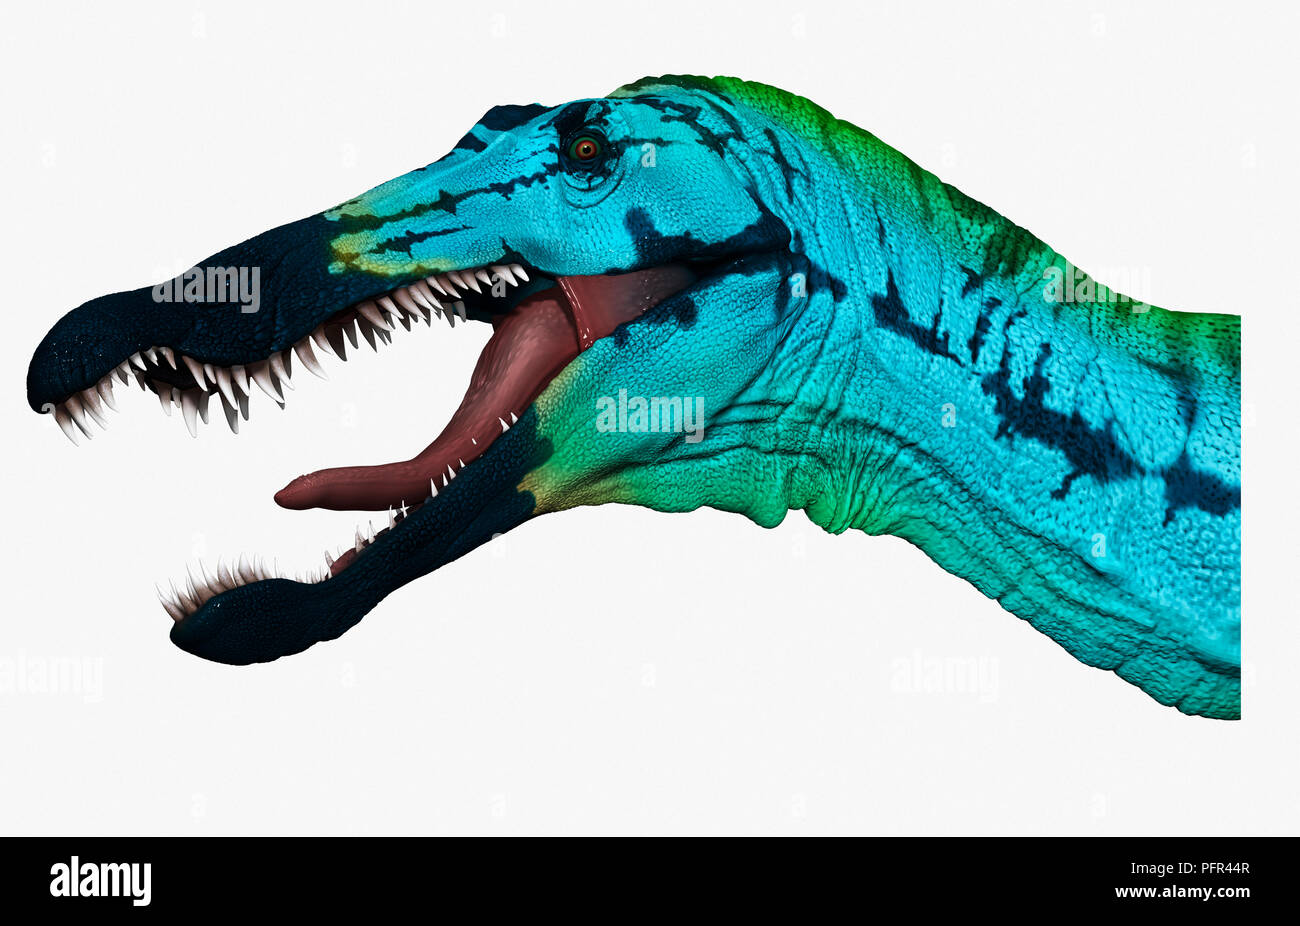 Suchomimus, digital illustration Stock Photo